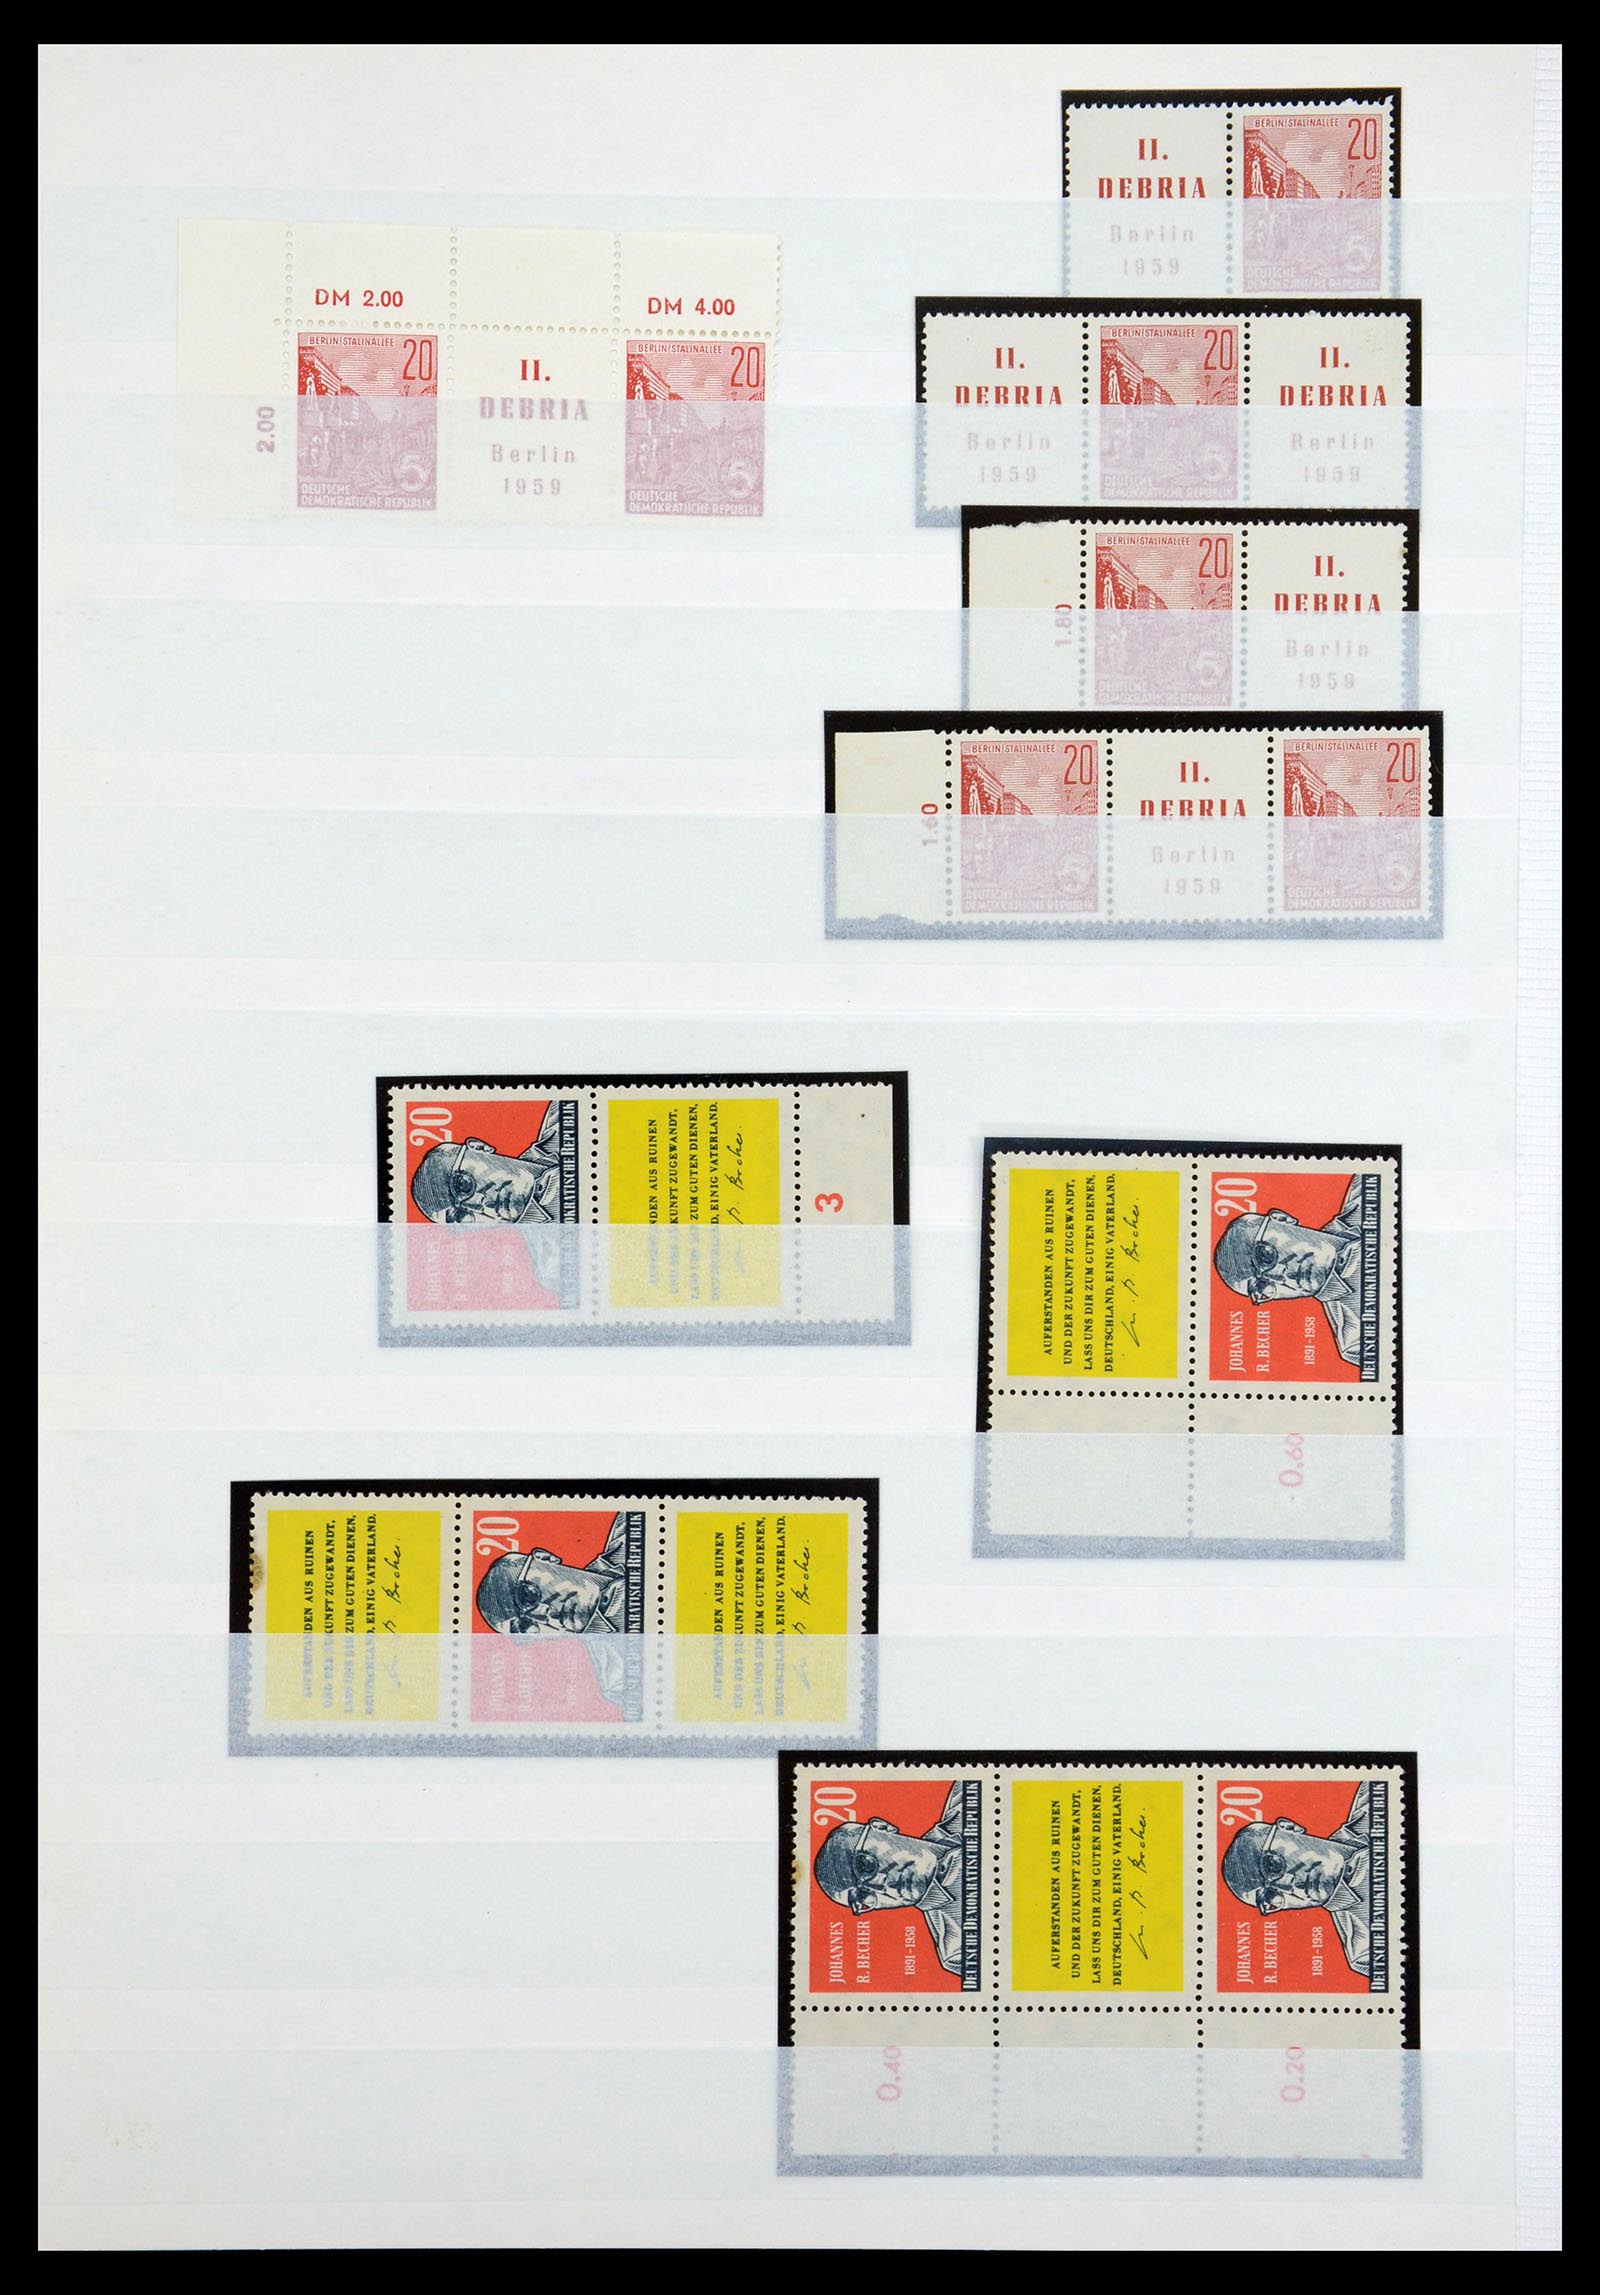 35227 021 - Postzegelverzameling 35227 DDR combinaties 1955-1990.